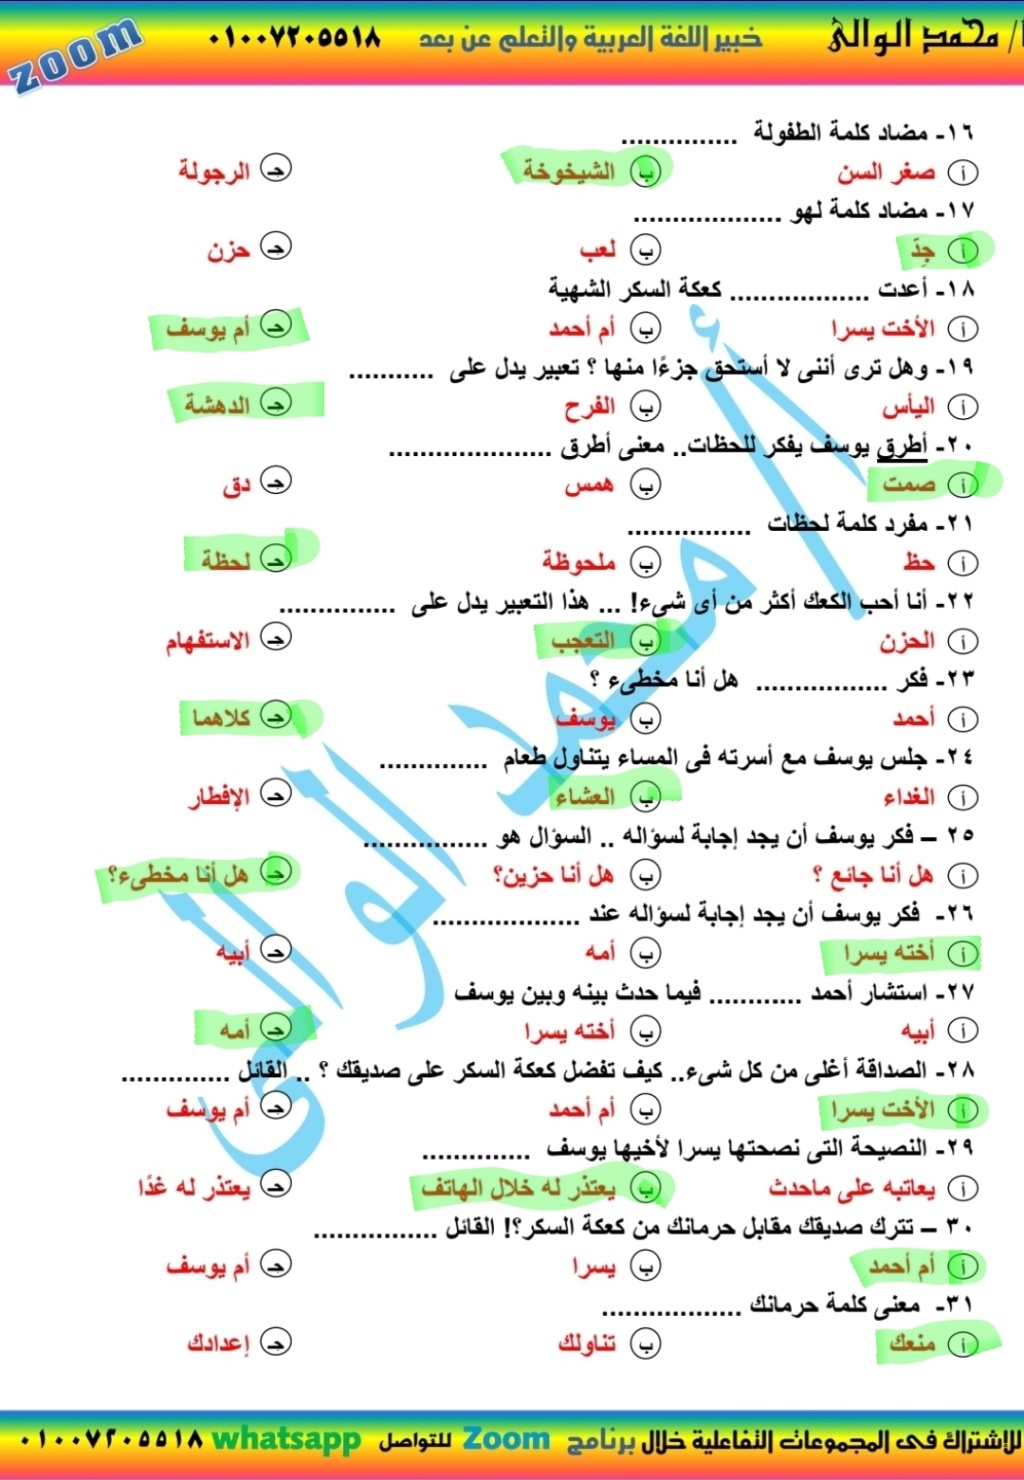  مراجعة اختيار من متعدد بالإجابة لغة عربية للصف السادس الإبتدائى الترم الثانى 2021 أ/ محمد الوالى  18129